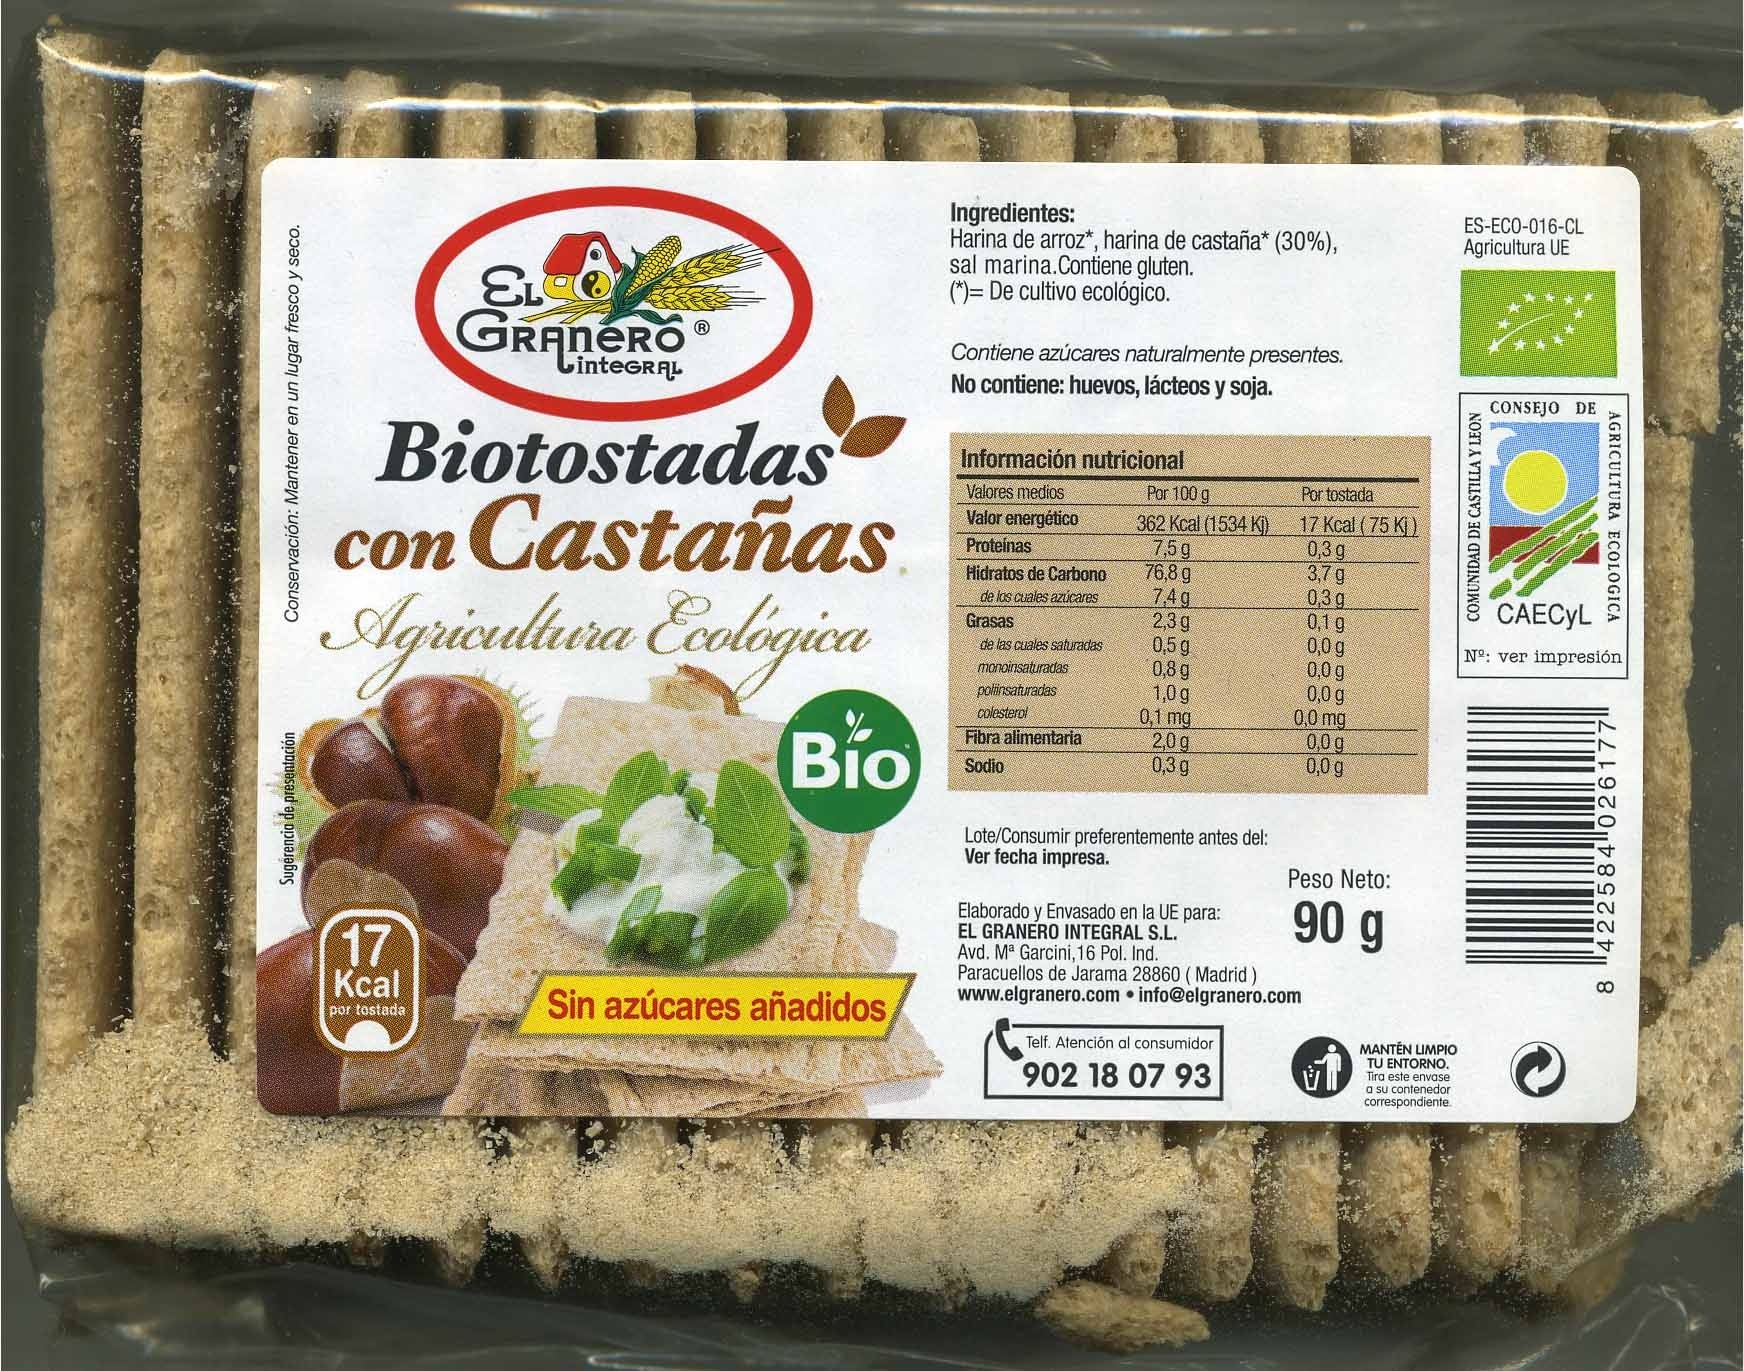 Biotostadas con castañas - Product - es